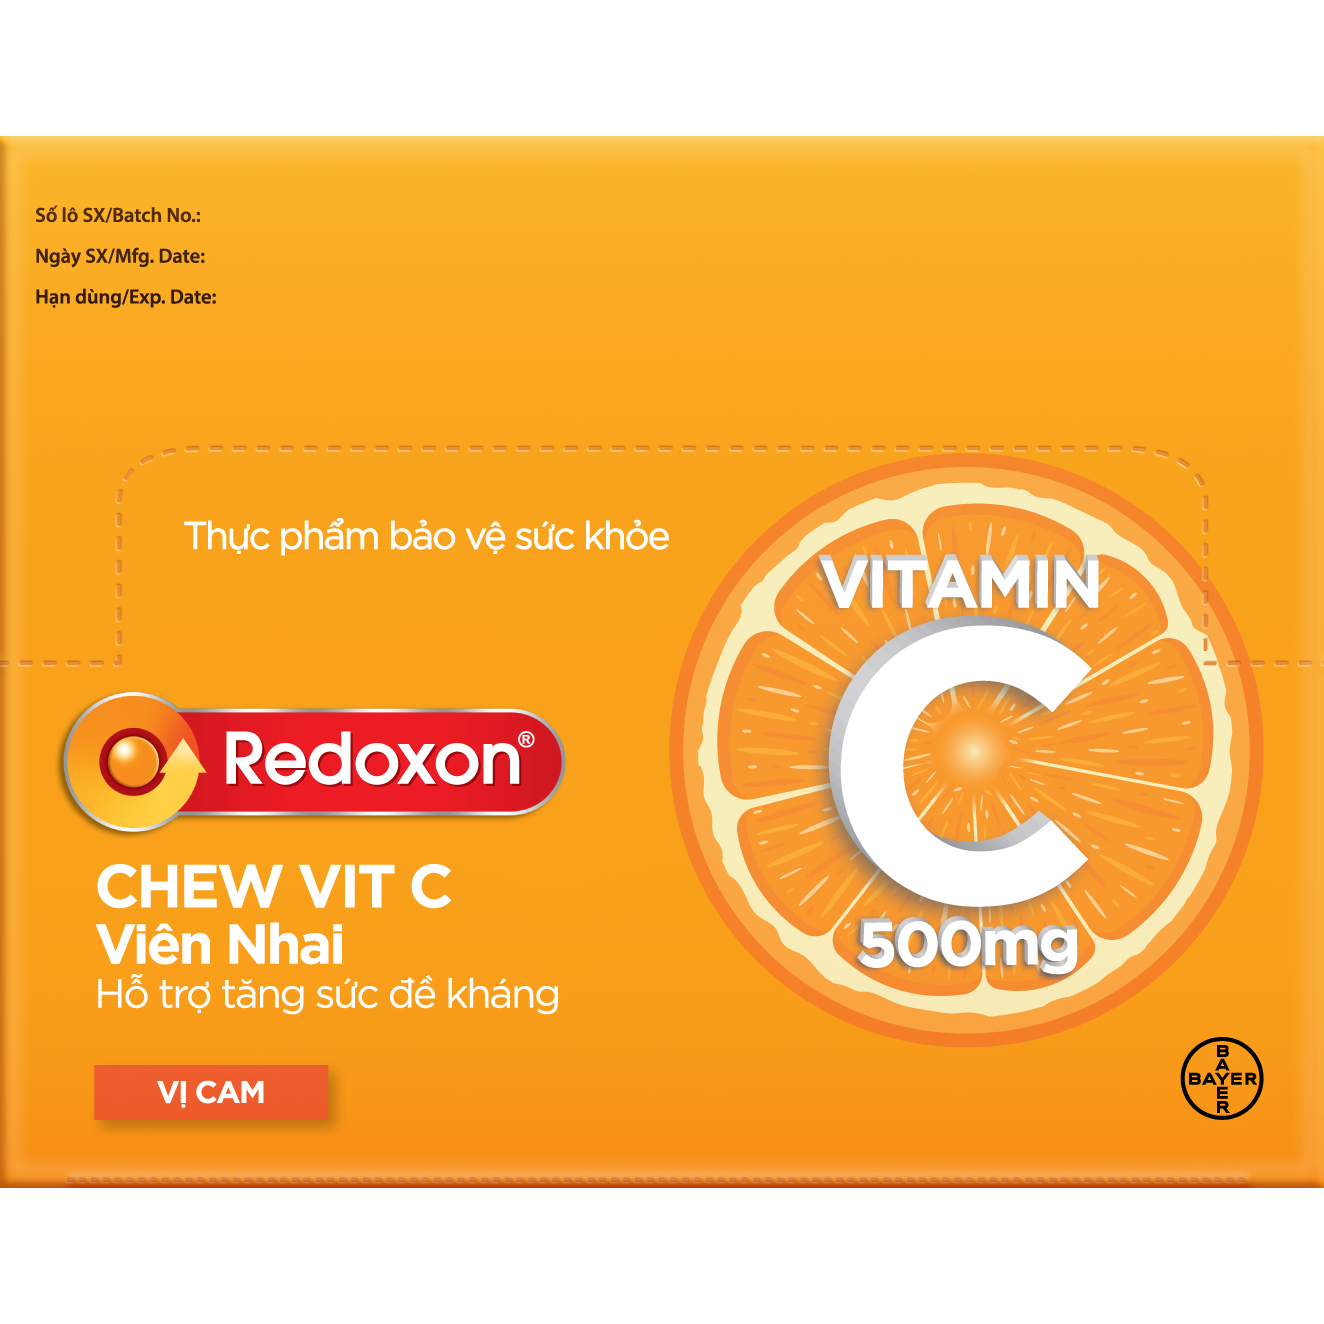 Viên nhai Vitamin C hỗ trợ tăng sức đề kháng- Thực phẩm bảo vệ sức khỏe Redoxon Chew Vit C